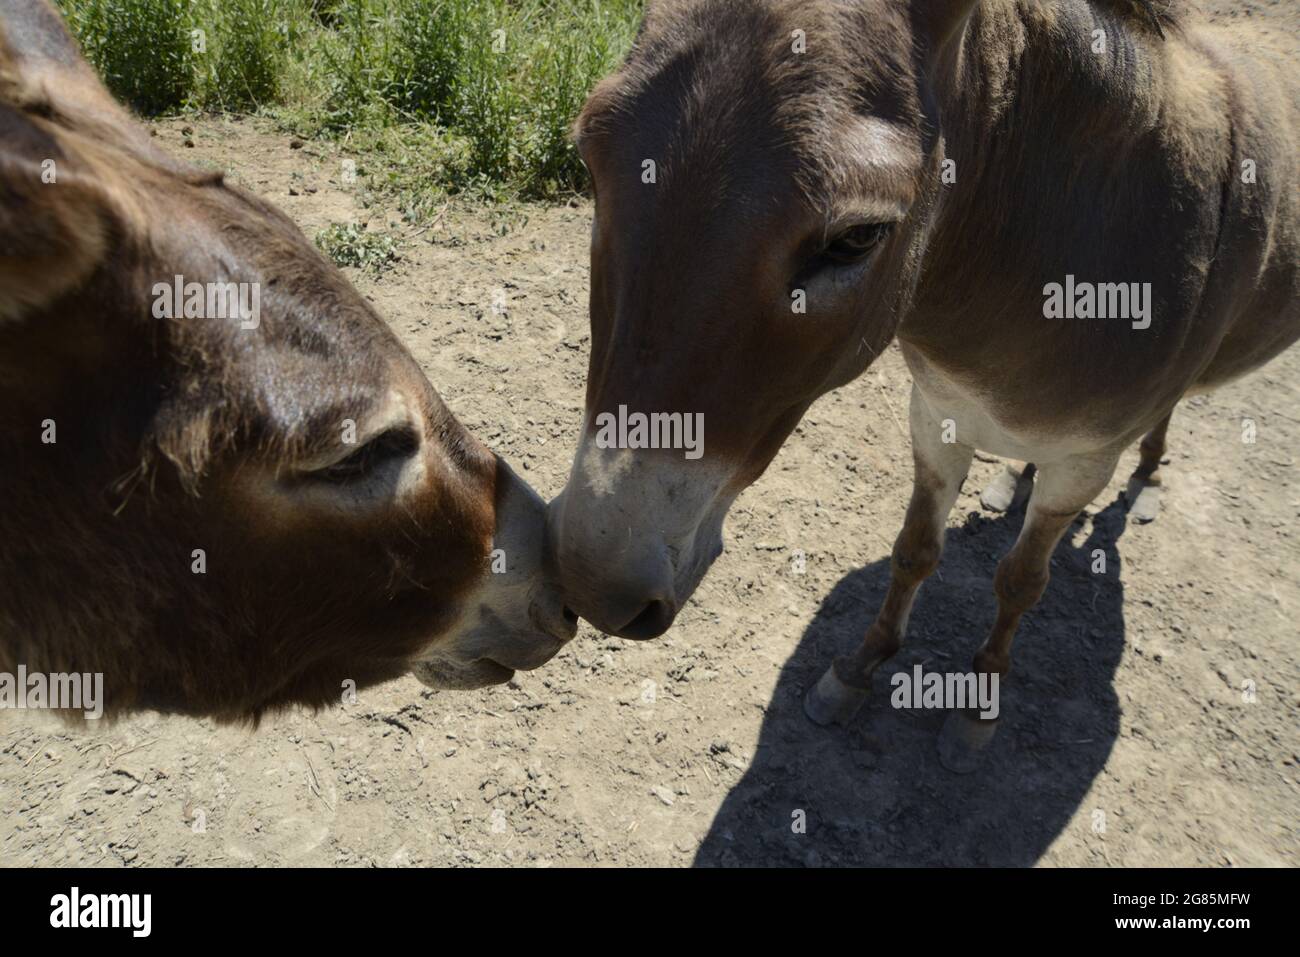 donkey, Stock Photo